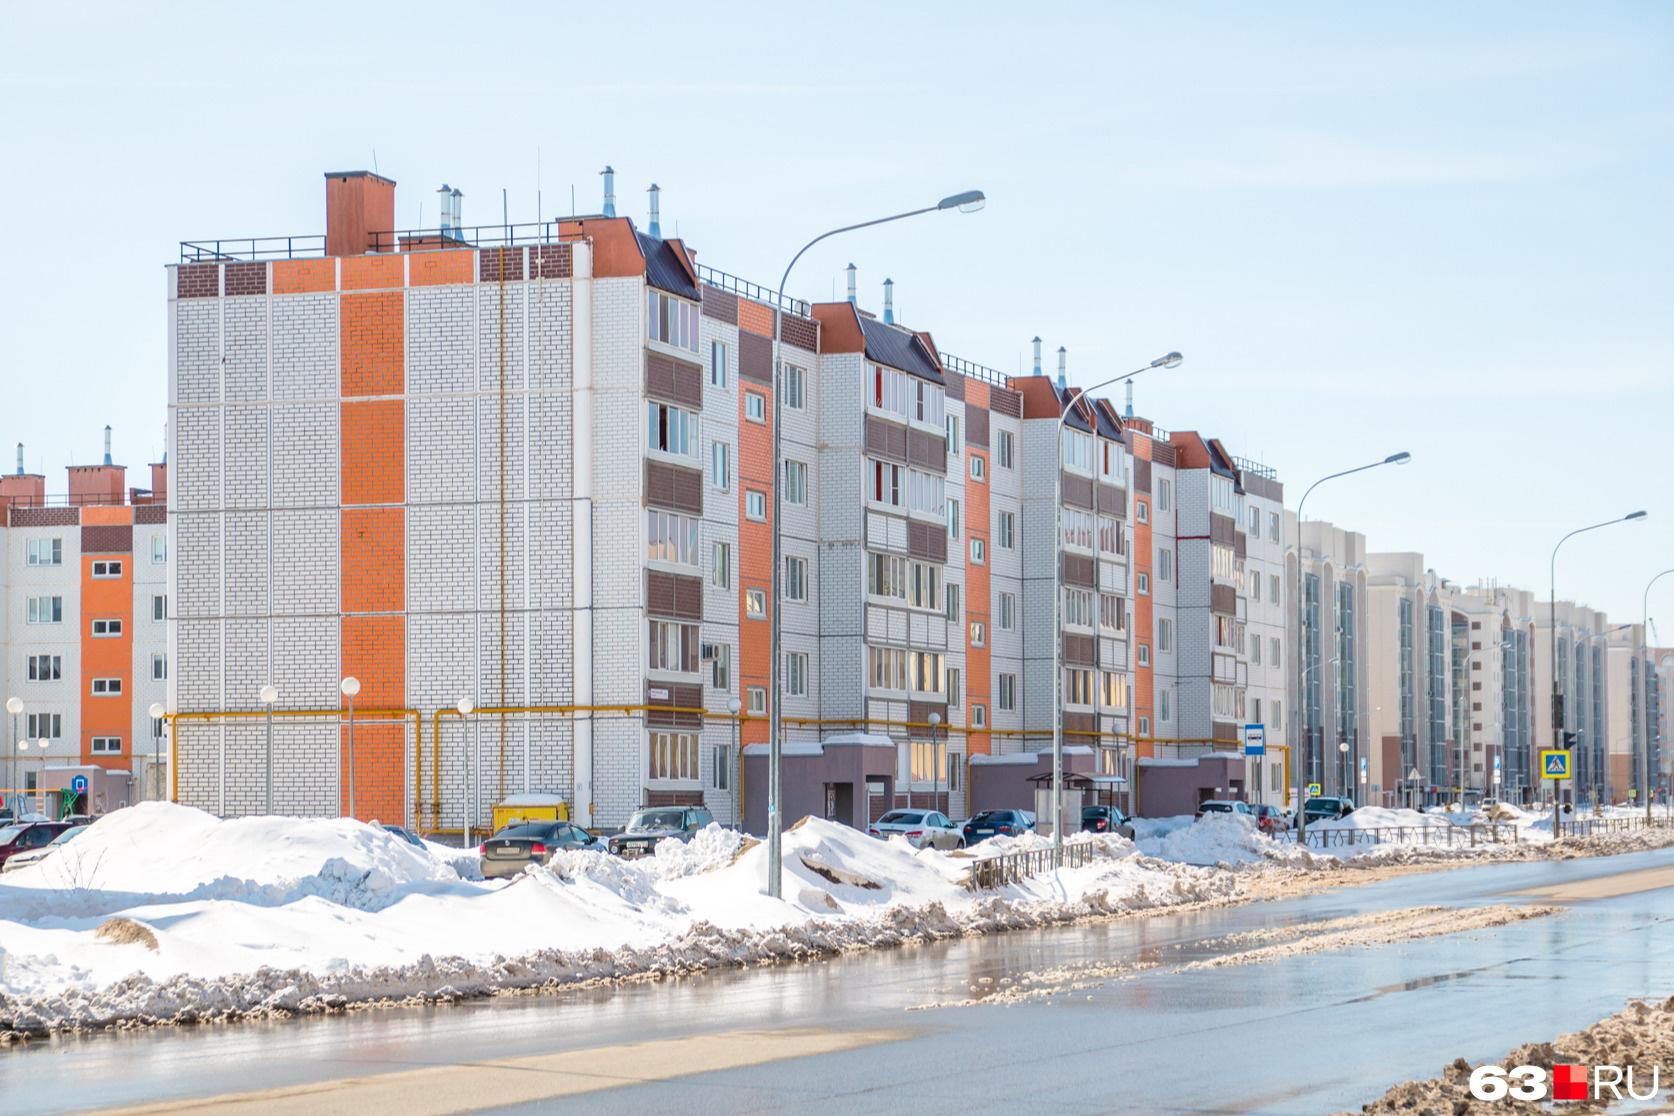 В Южном городе квадратный метр жилья стоит от 74 тысяч до 110 тысяч рублей